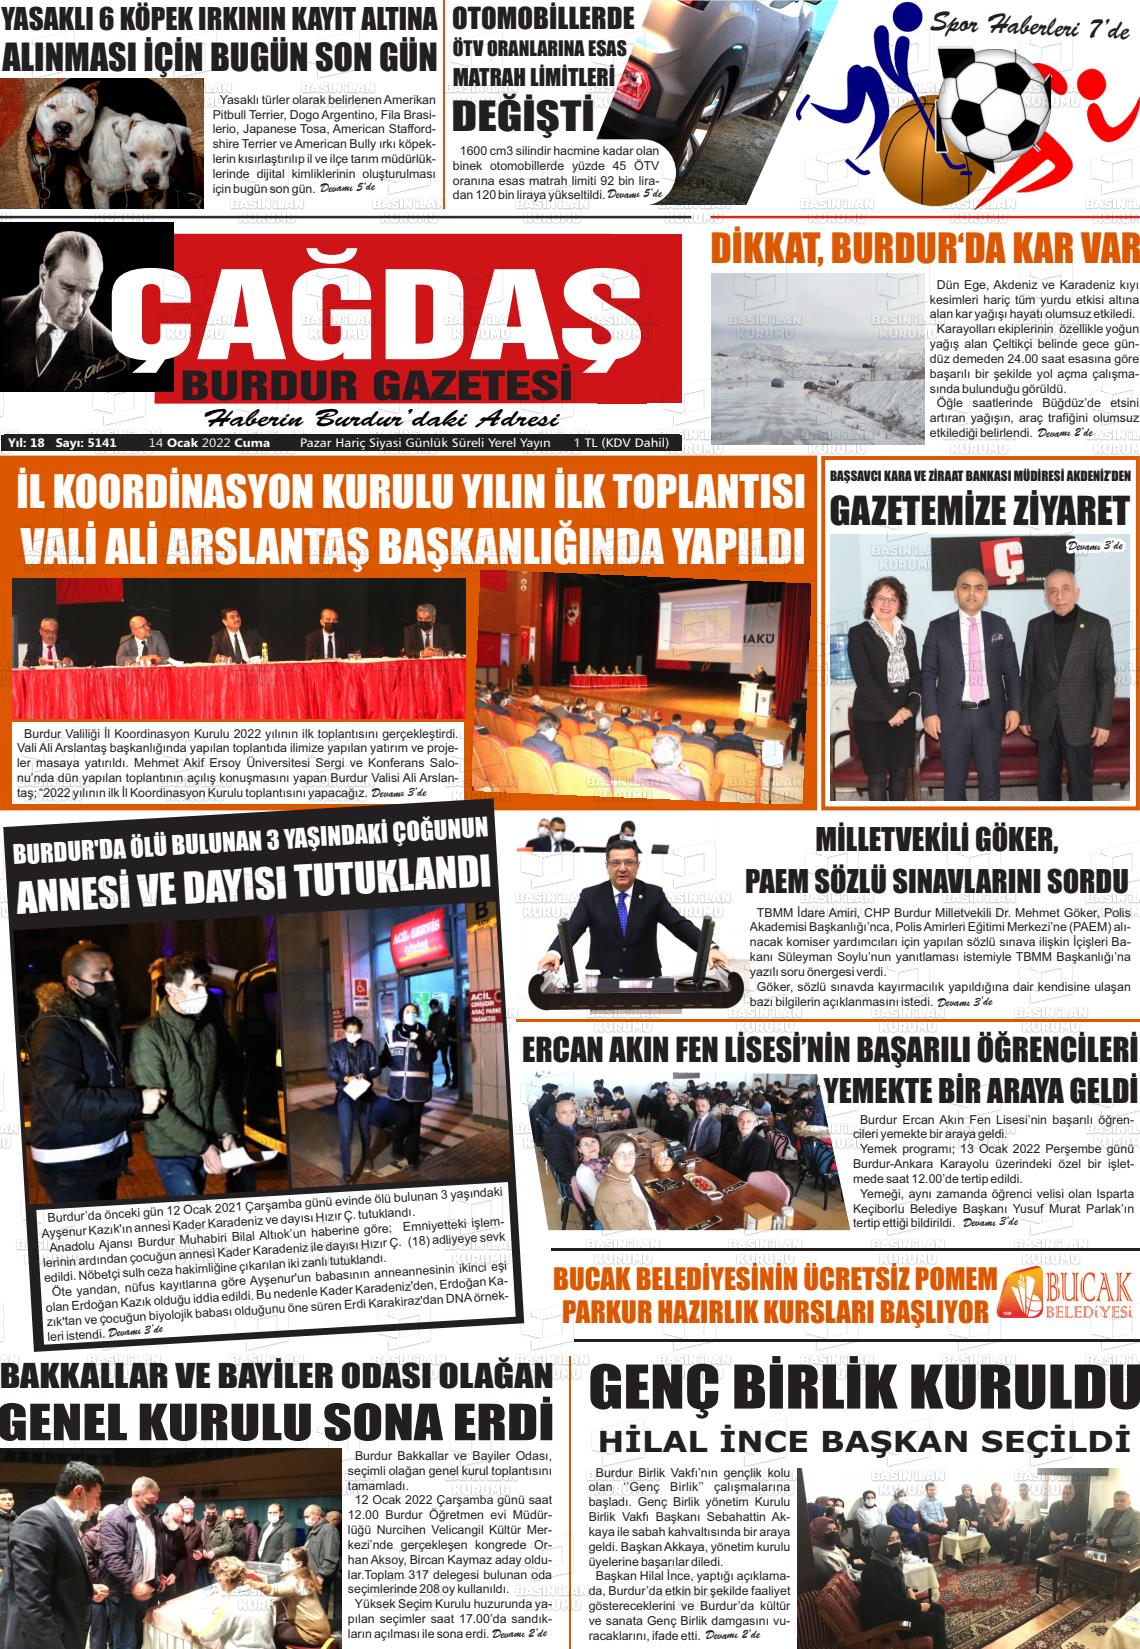 14 Ocak 2022 Çağdaş Burdur Gazete Manşeti